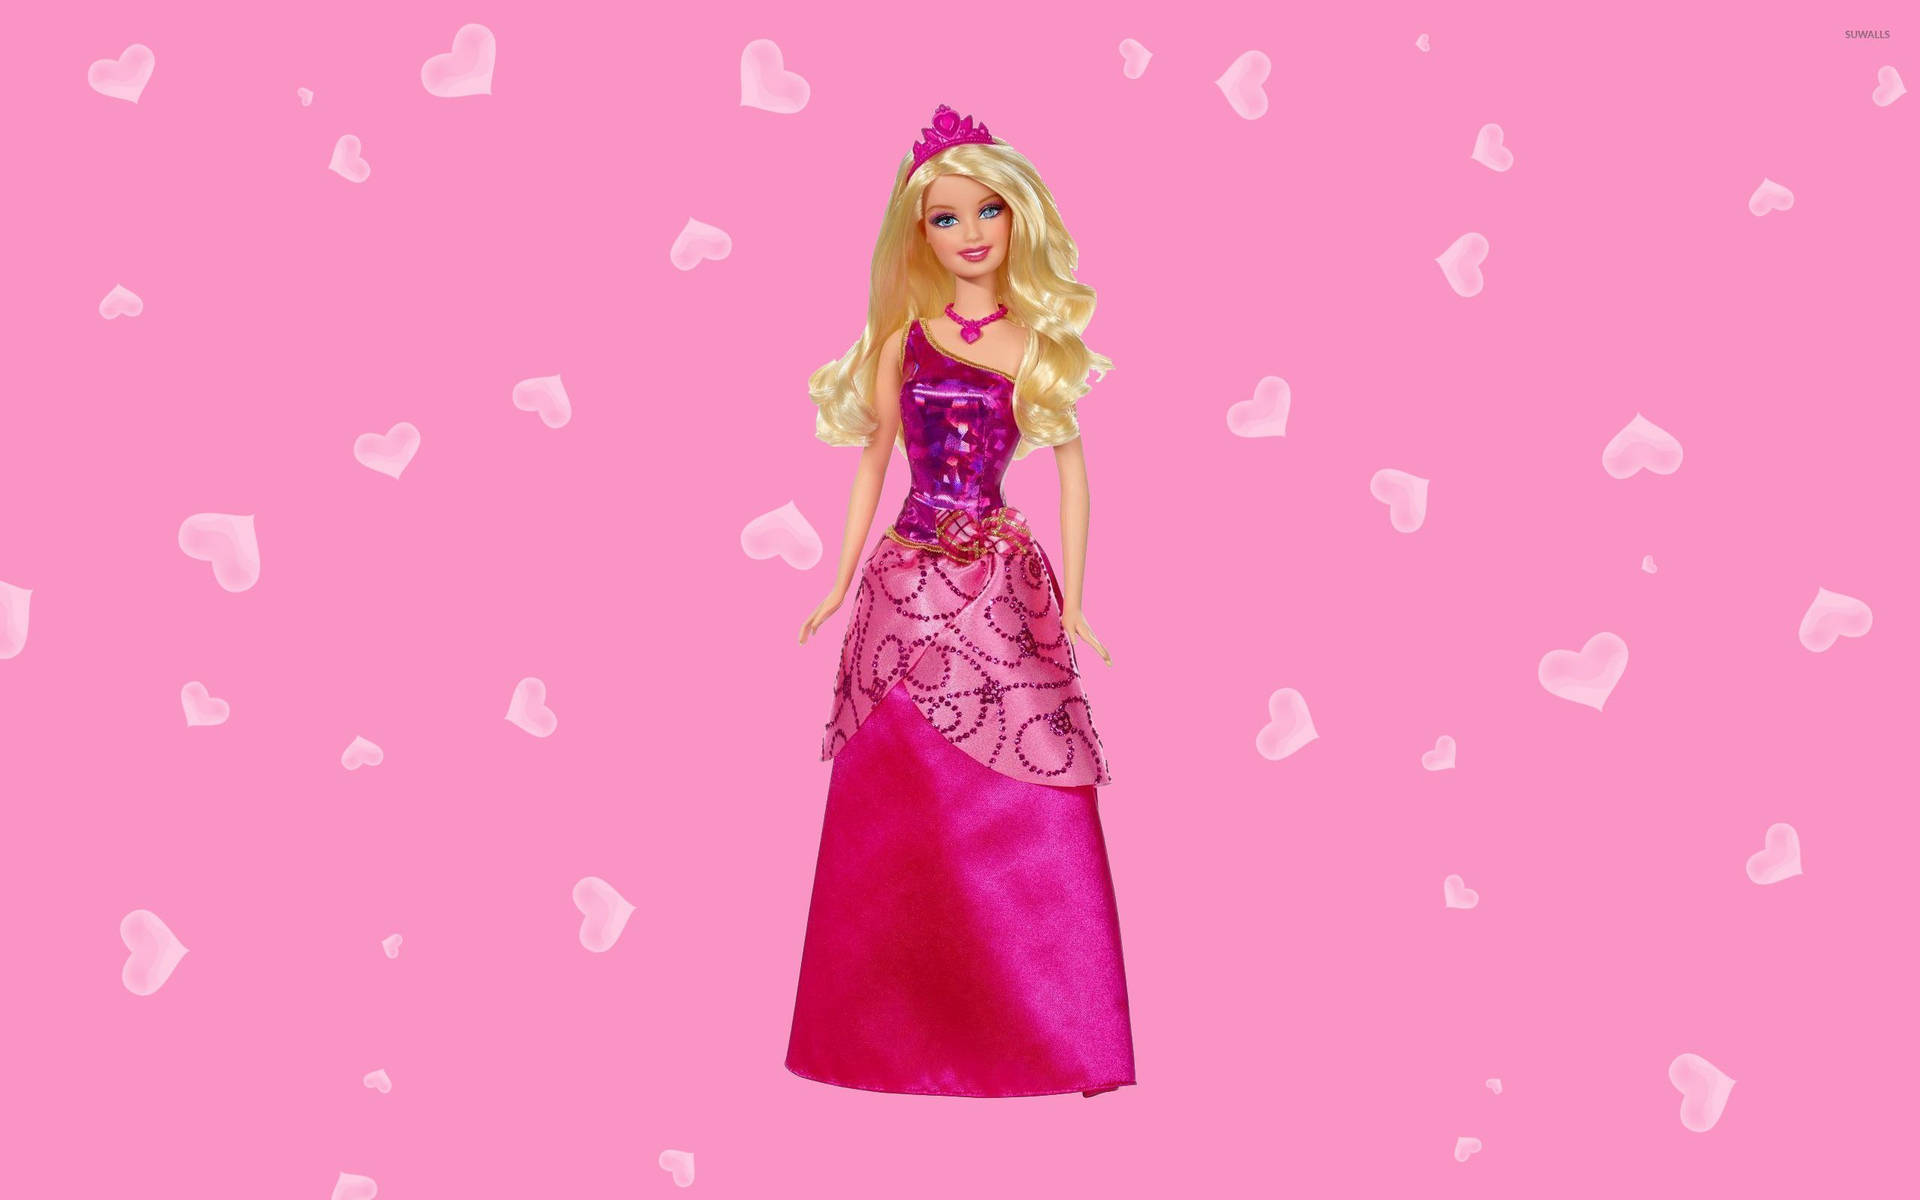 Dress Up Like a Fairytale Princess with Barbie™ Wallpaper